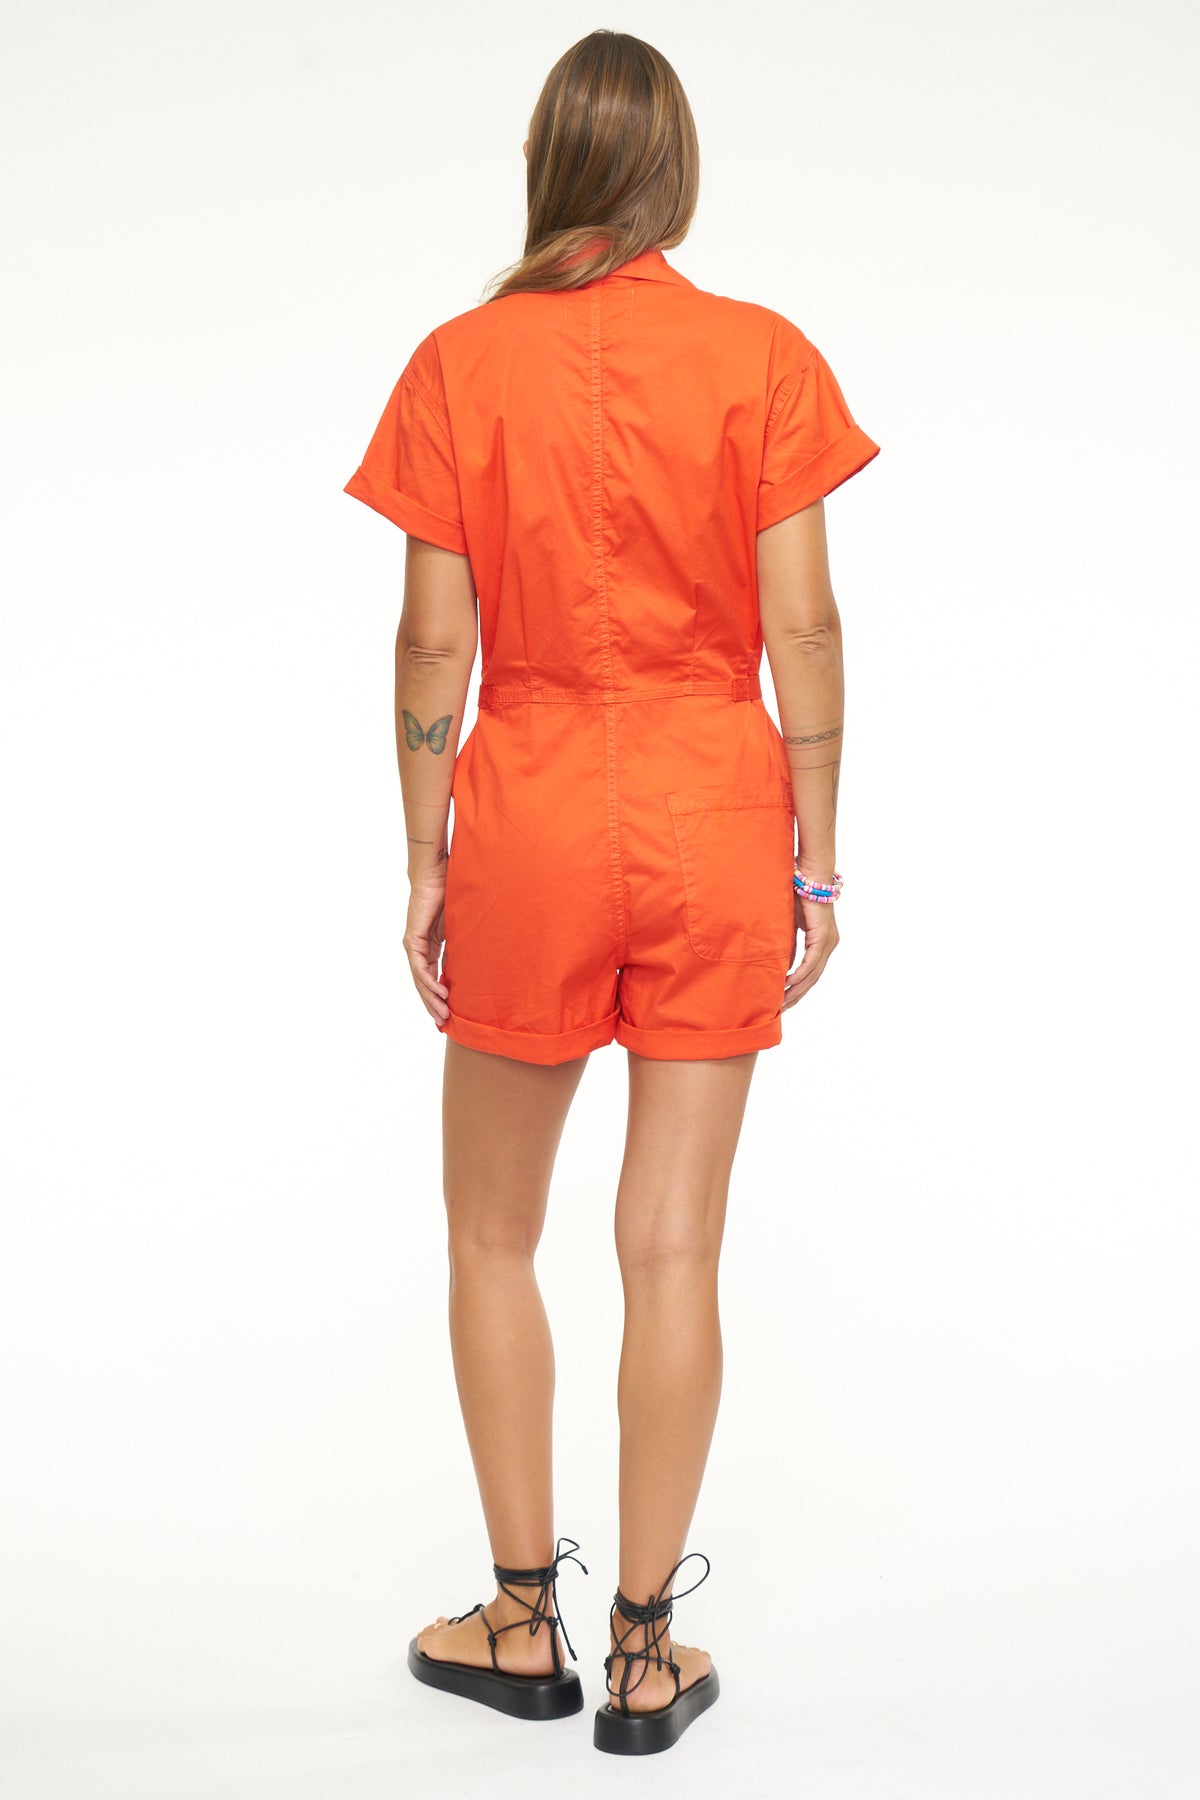 Parker Short Sleeve Romper - Blood Orange
            
              Sale